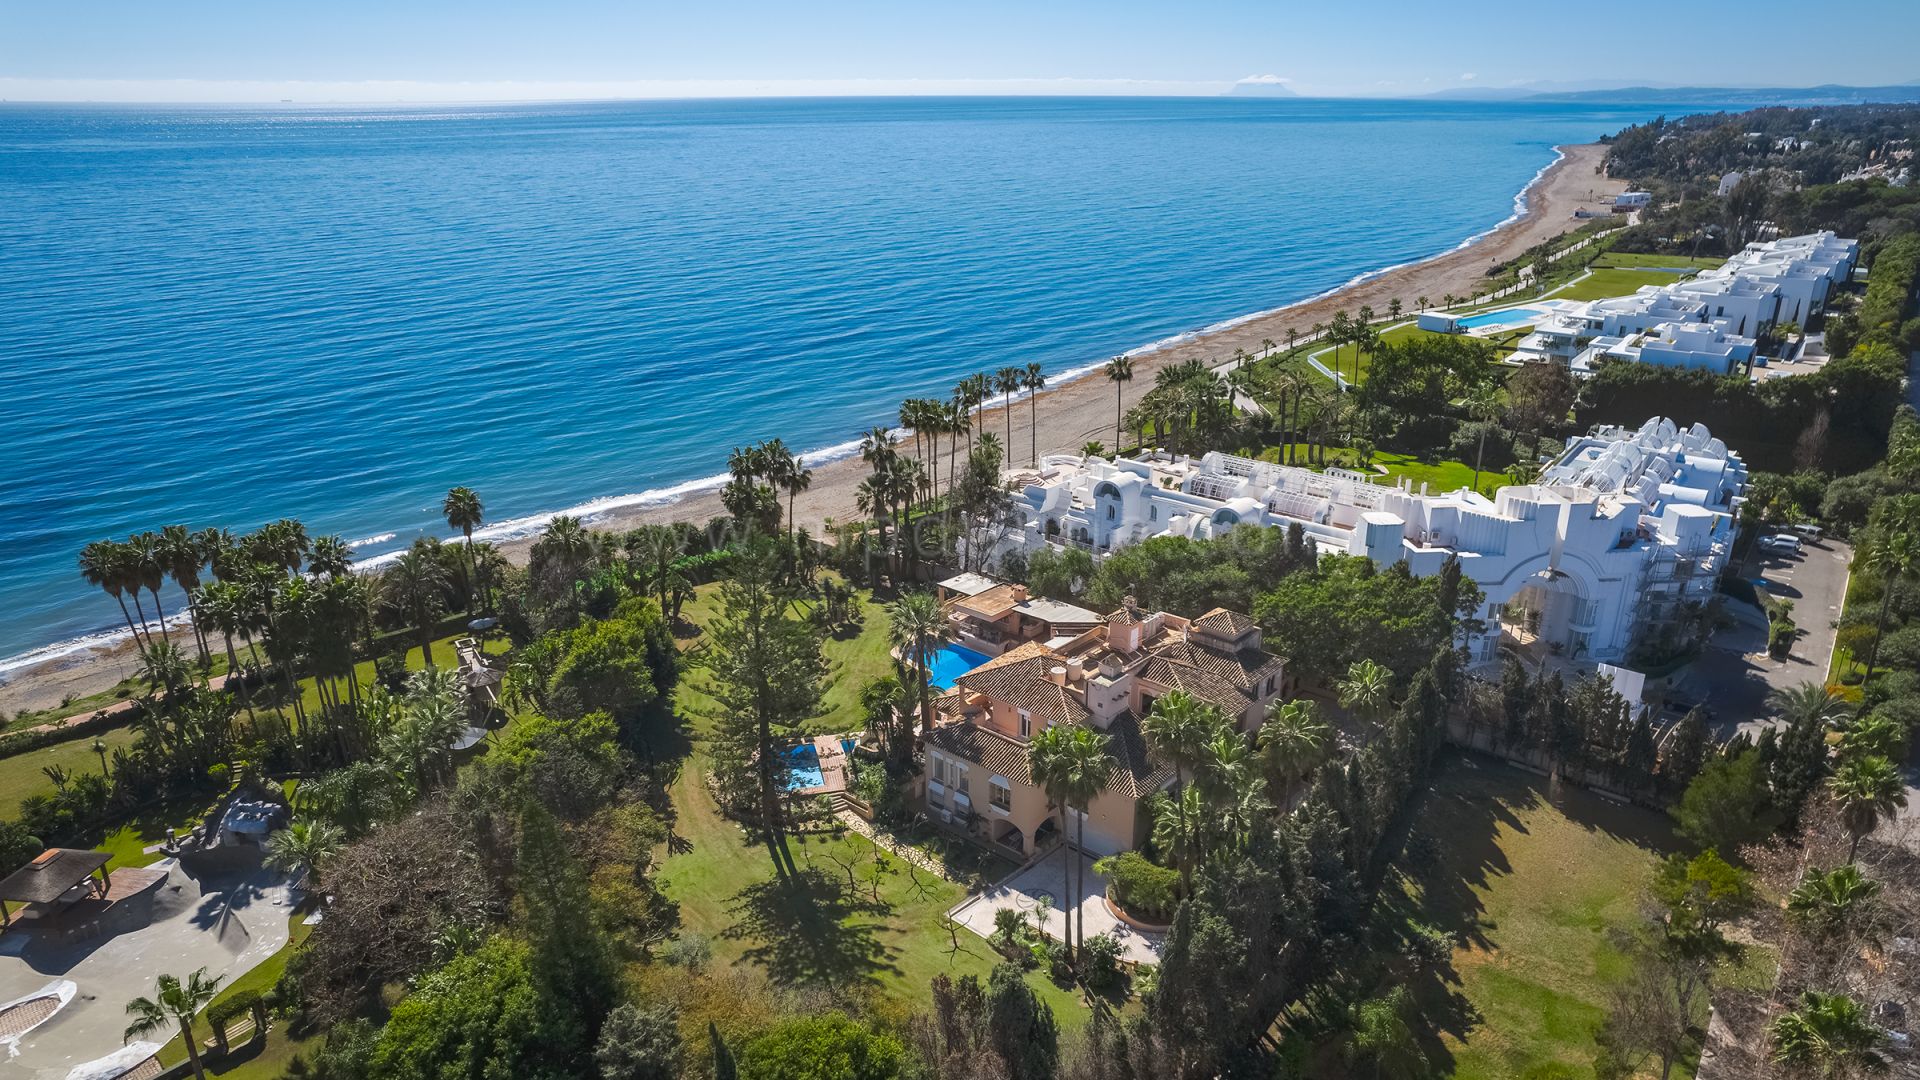 Villa im spanischen Stil direkt am Strand in Estepona